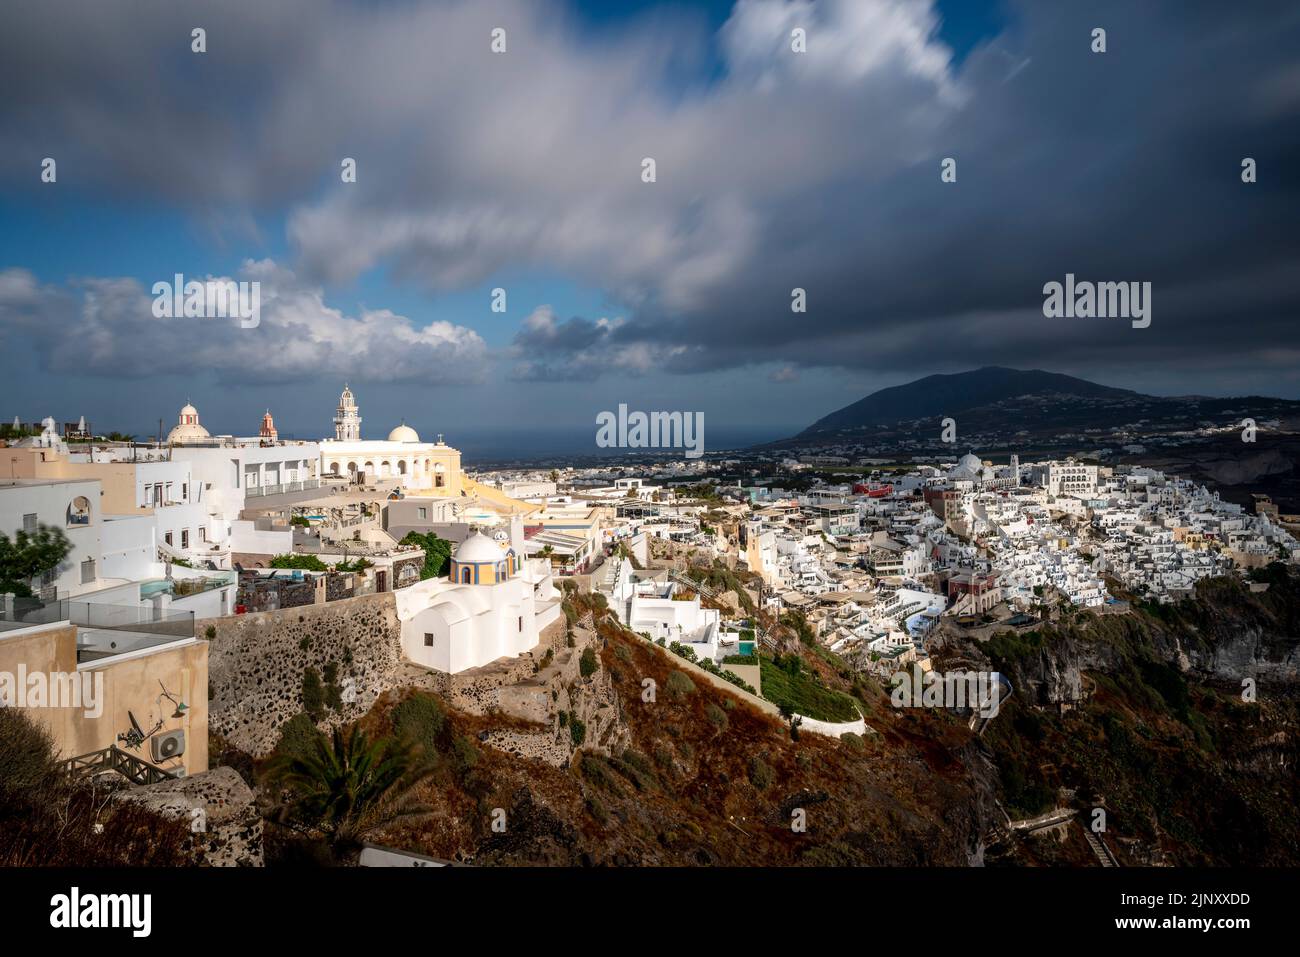 Una vista de la ciudad principal de Thira (Thera) en la isla de Santorini, islas griegas, Grecia. Foto de stock